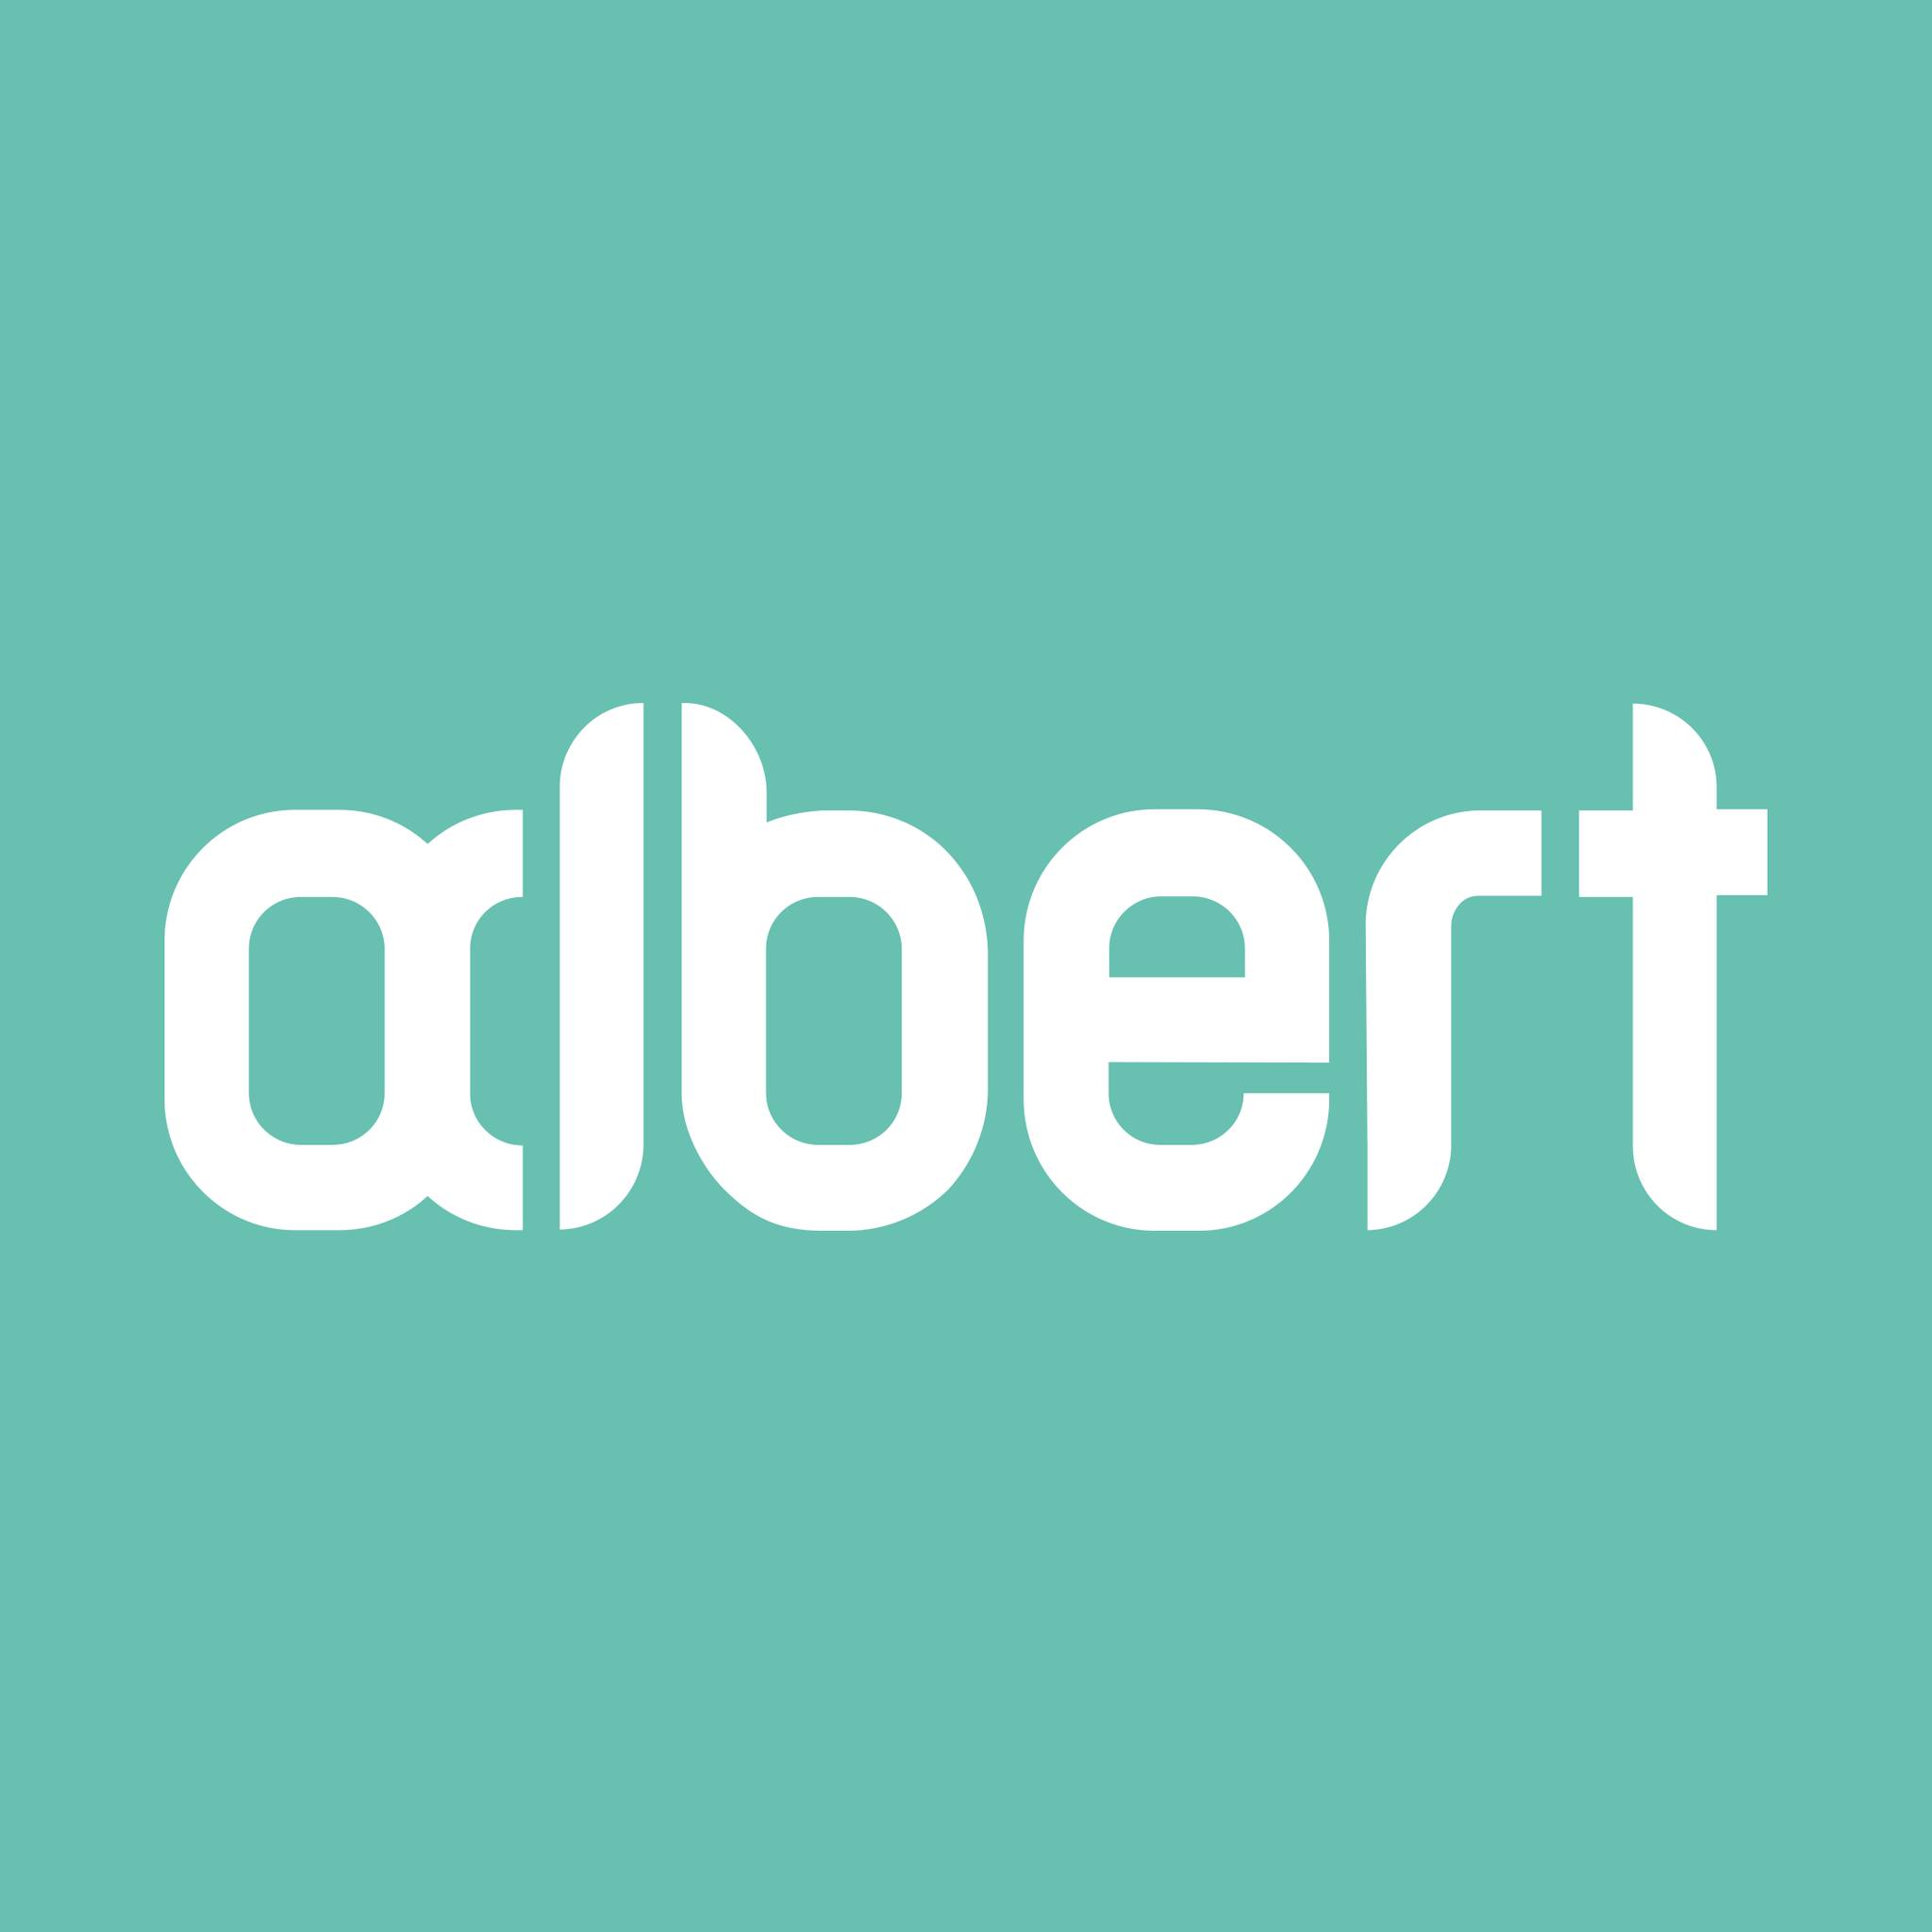 eEducation Albert